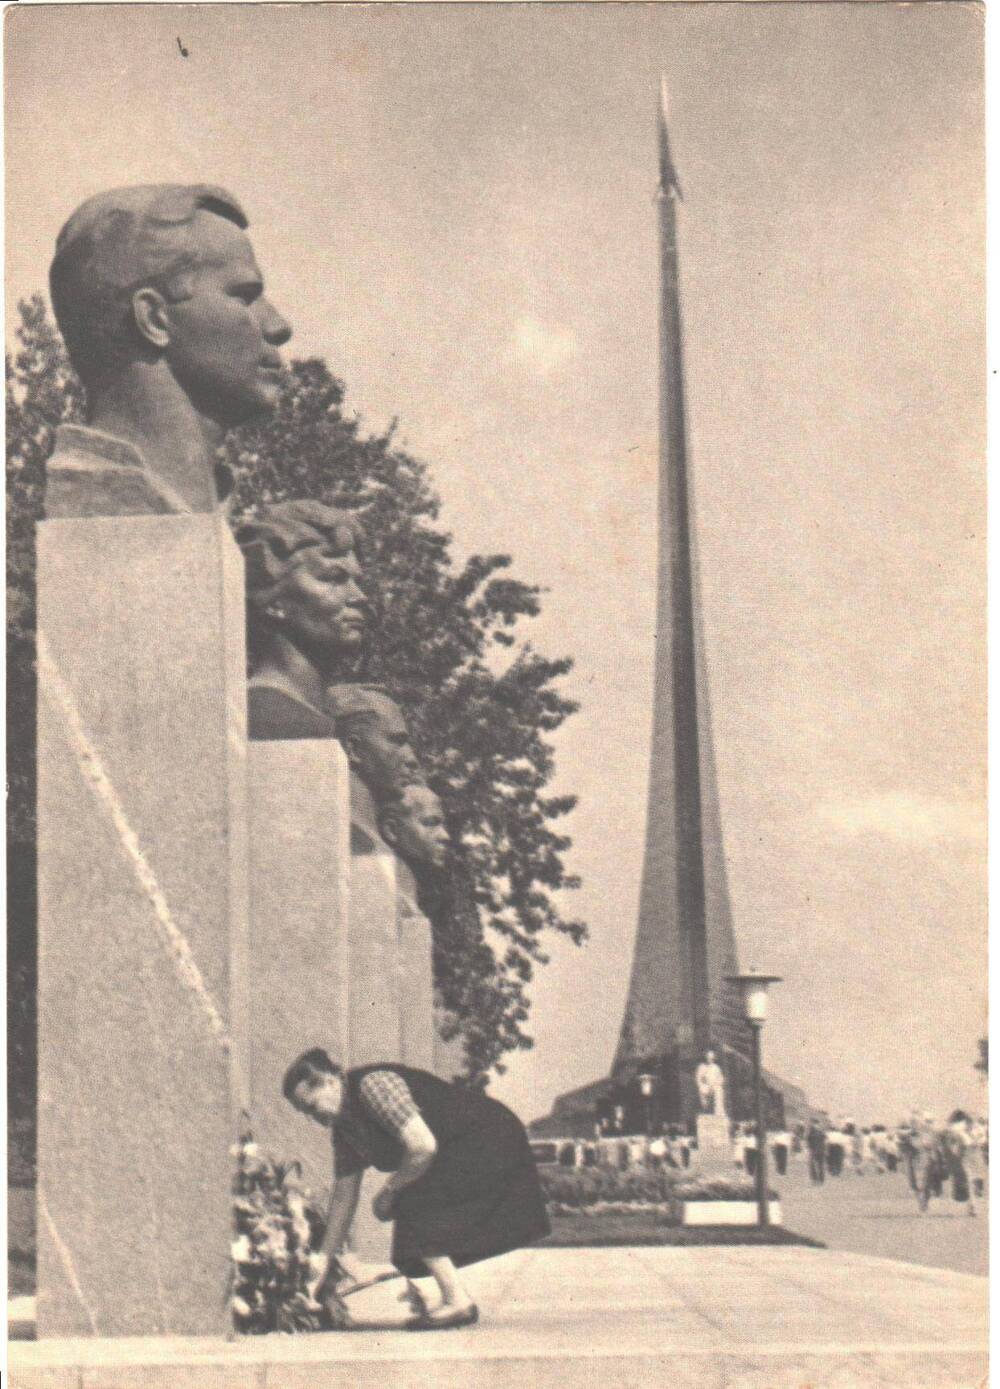 Цветы сыну. Комплект открыток СССР Юрий Гагарин. Москва 1970 г. Фото А.Лукашенко. 